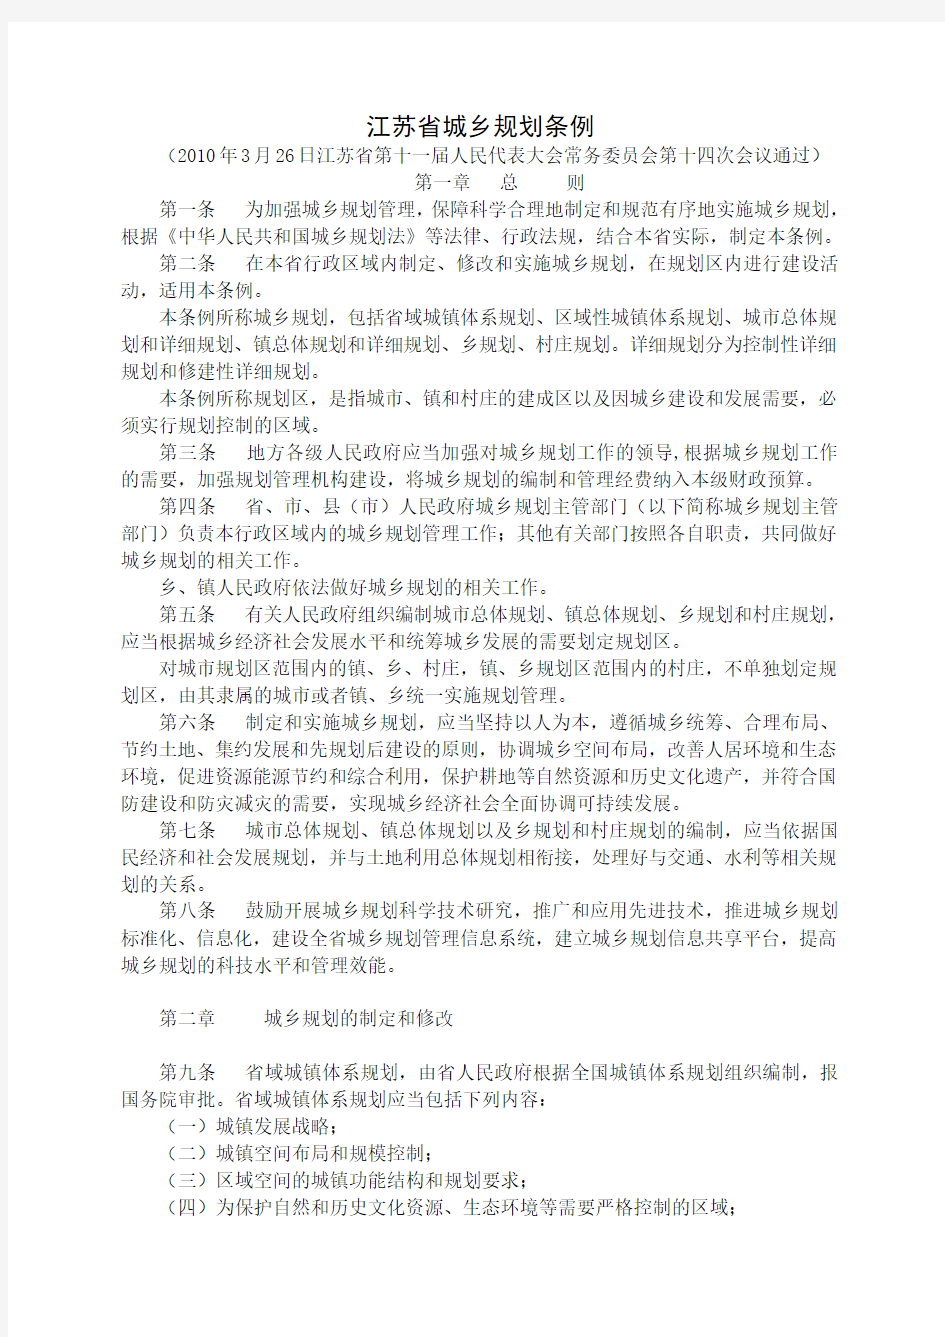 江苏省城乡规划条例(2010-3-26)11